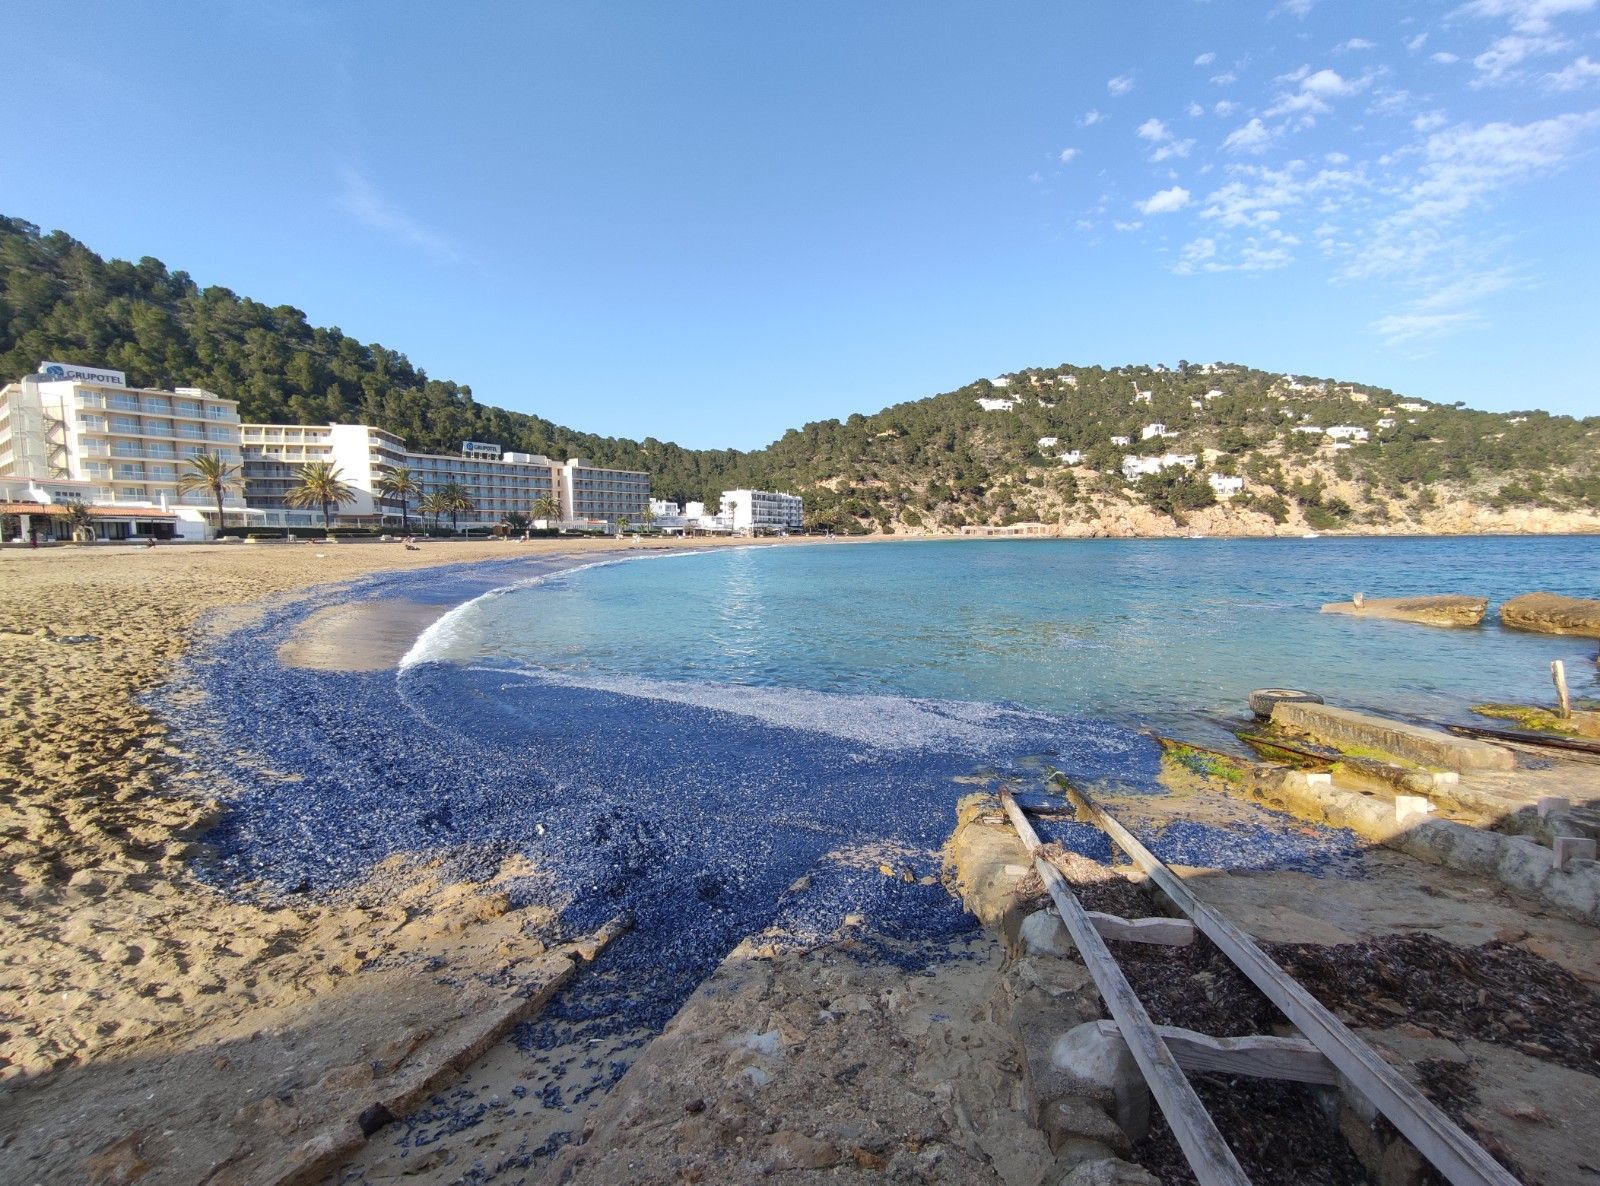 Aparecen cientos de miles de medusas en una playa de Ibiza